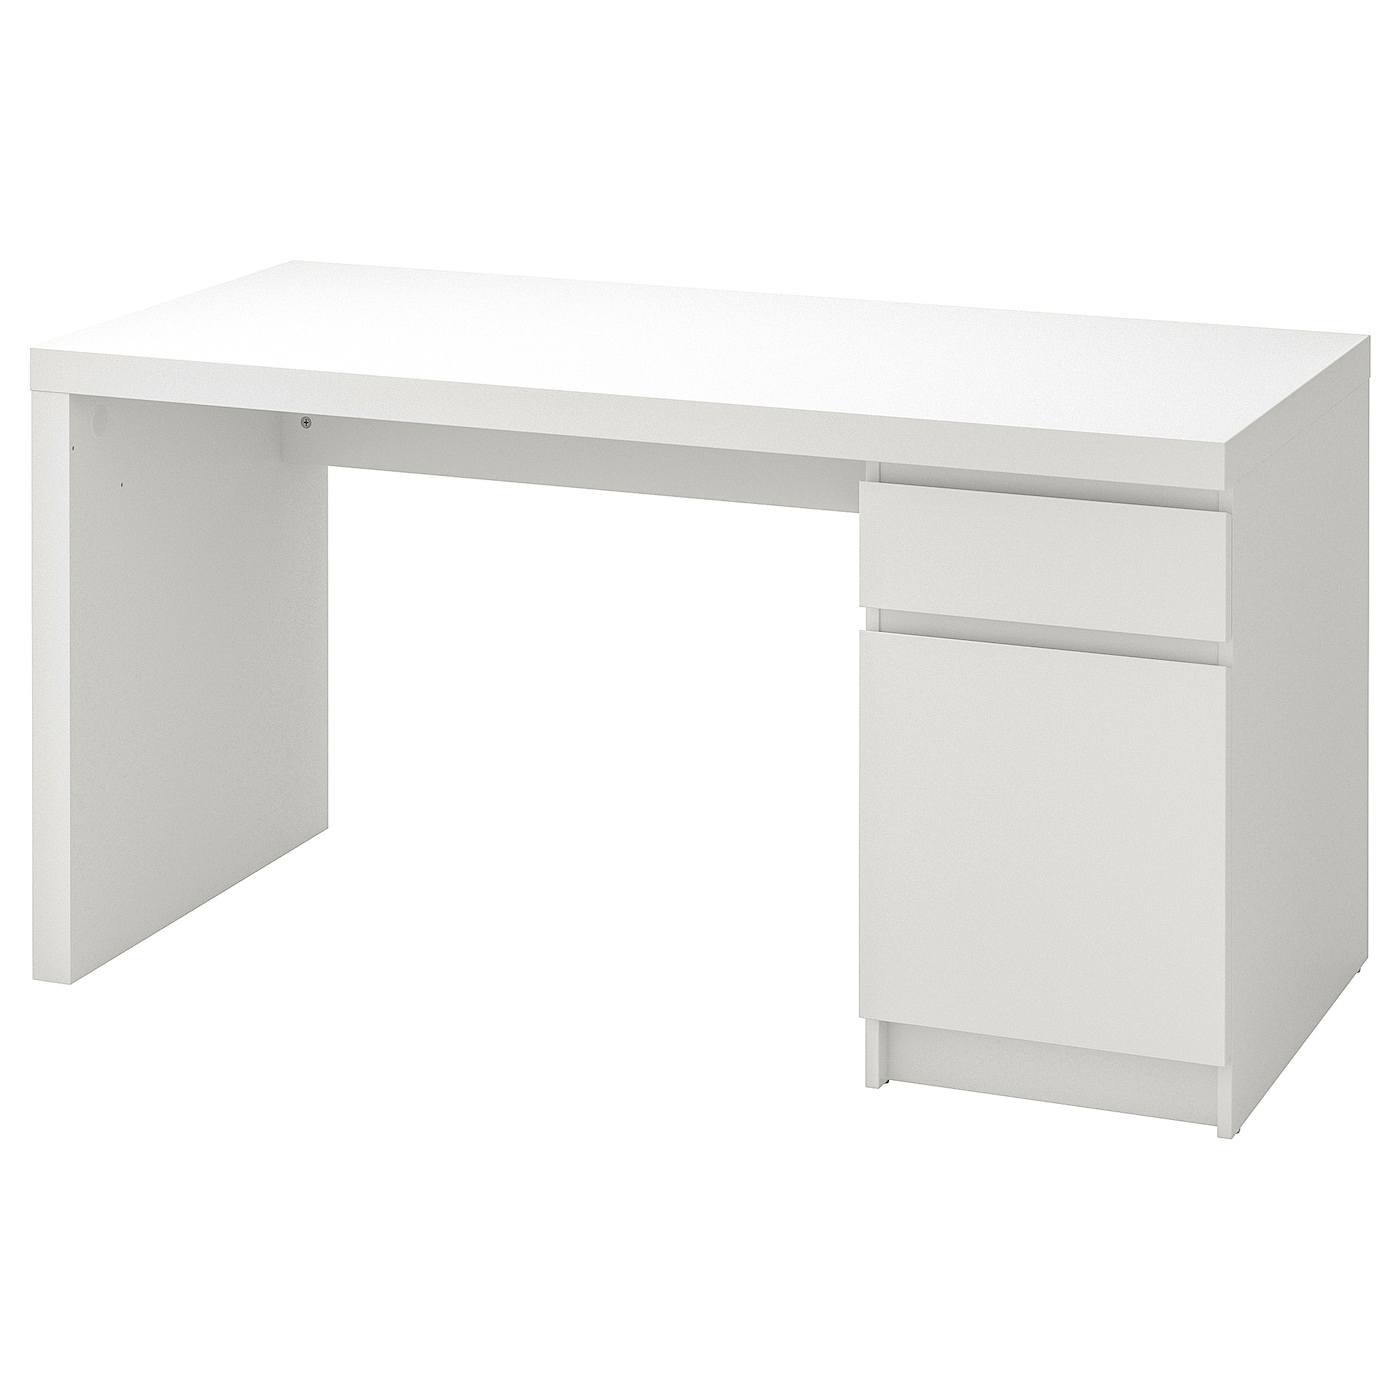 Письменный стол с ящиком - IKEA MALM, 140x65 см, белый, МАЛЬМ ИКЕА